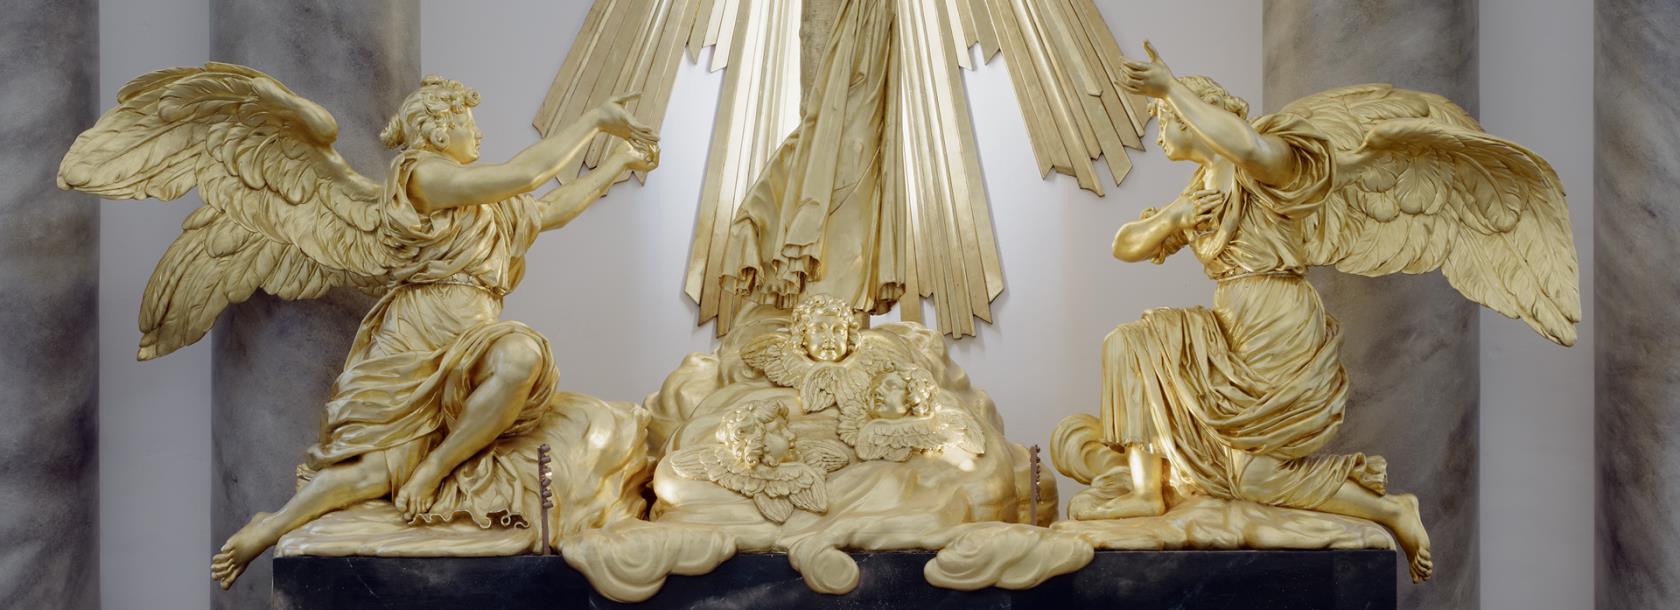 Göteborgs domkyrka, altaruppsatsens nedre del med två änglar